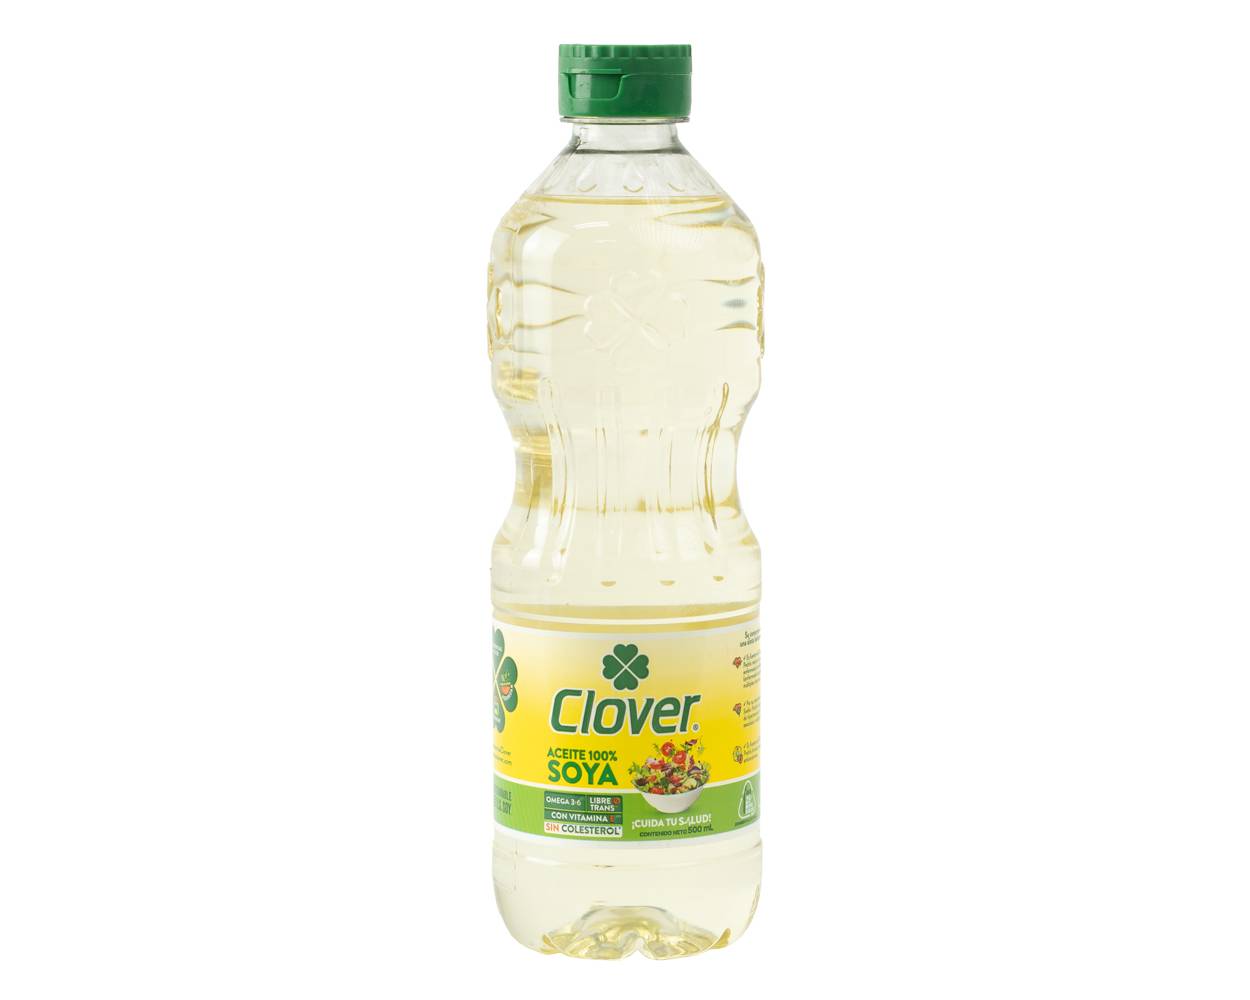 Clover aceite de soya (500 ml)